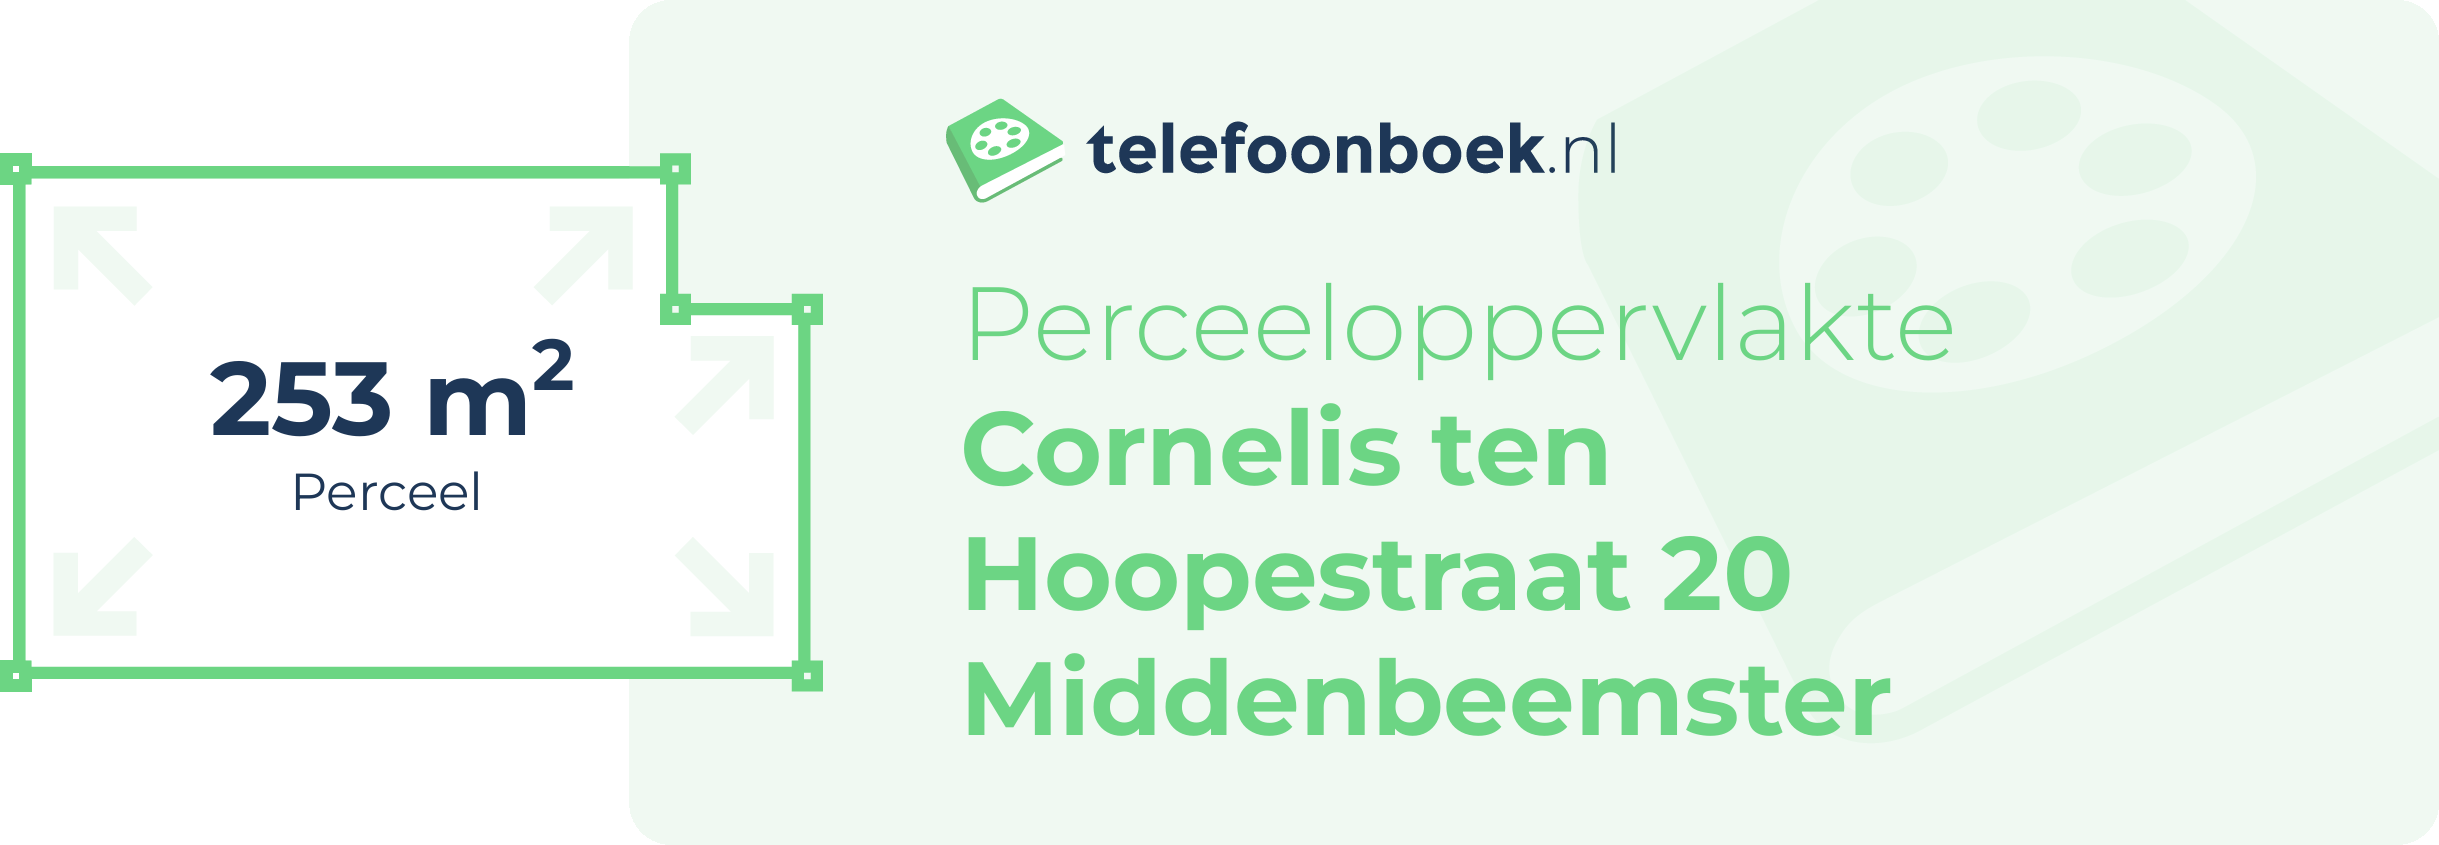 Perceeloppervlakte Cornelis Ten Hoopestraat 20 Middenbeemster